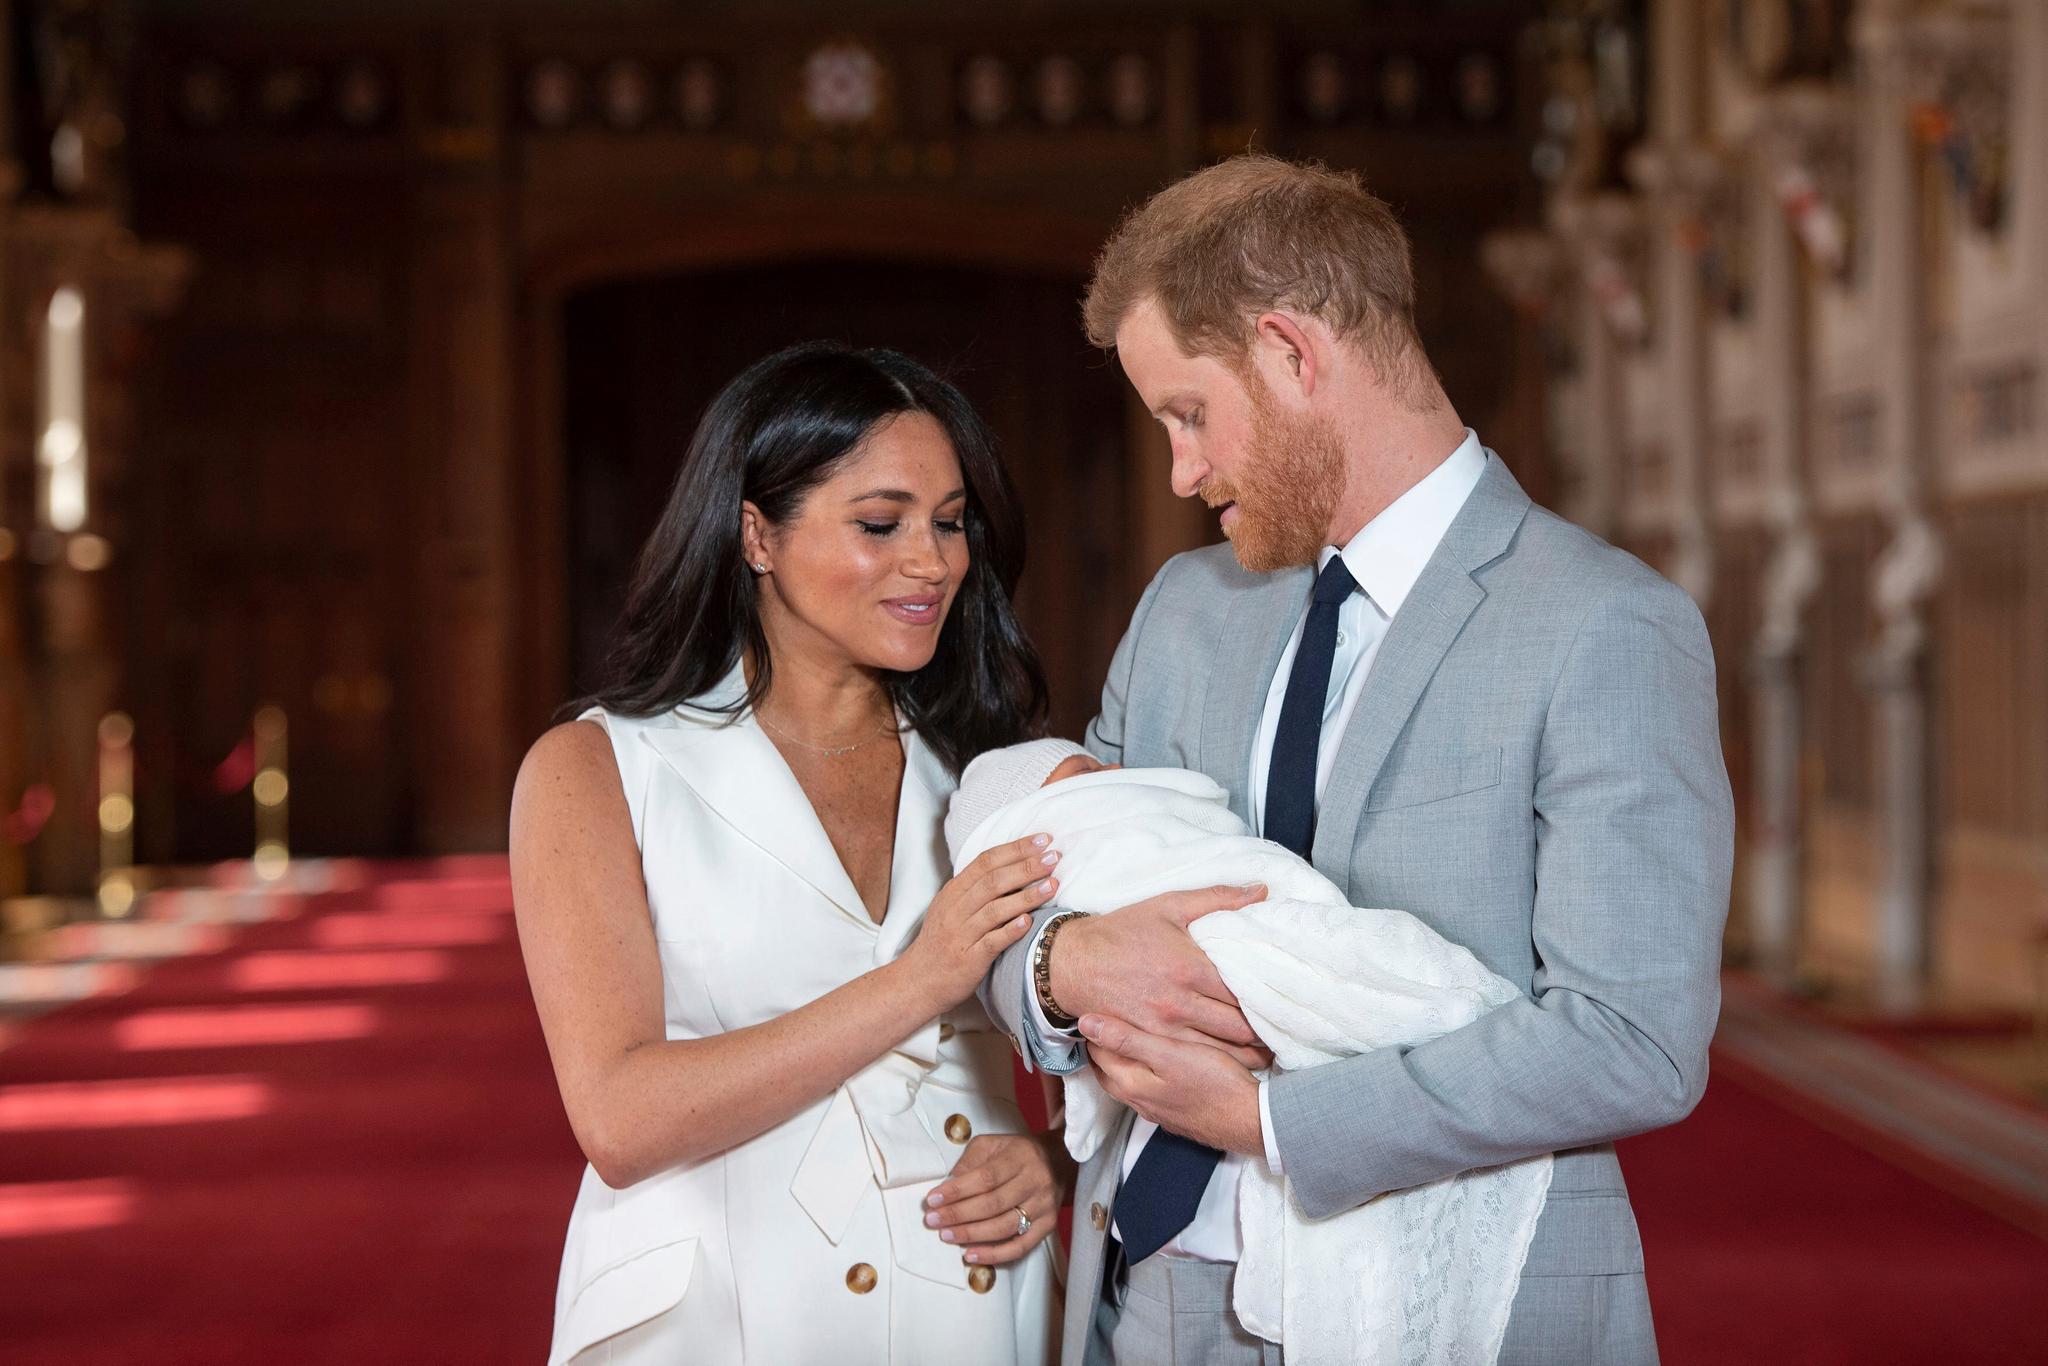 En av de mest kontroversielle uttalelsene i intervjuet handler om parets sønn Archie. Før fødselen skal angivelig et medlem av kongefamilien uttrykt bekymring for hvor mørk hudfarge han ville få. 